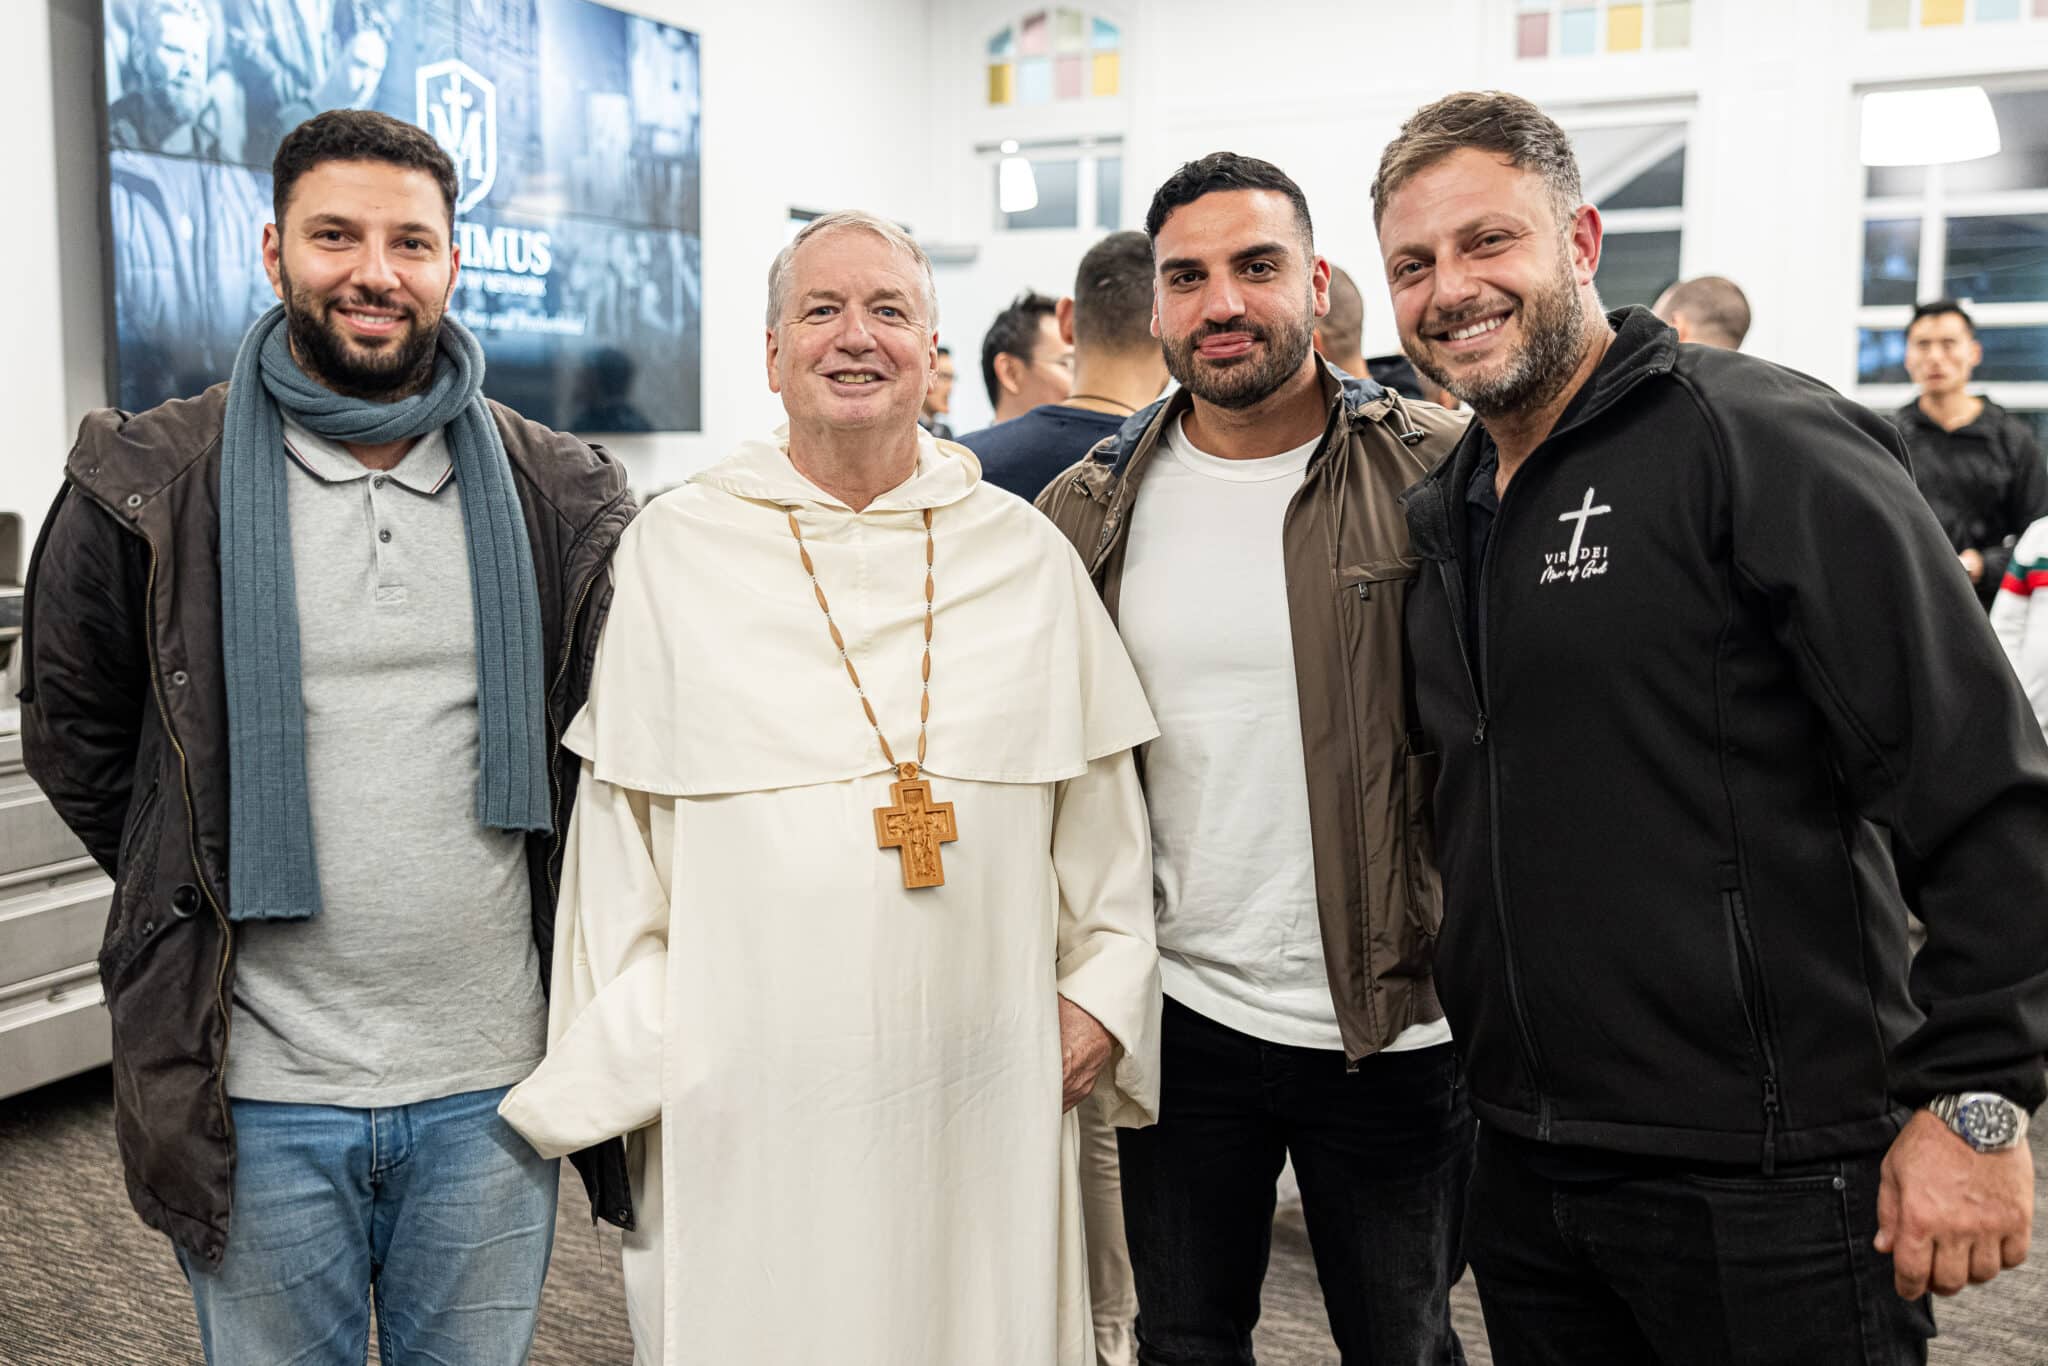 Men's group Sydney - The Catholic weekly